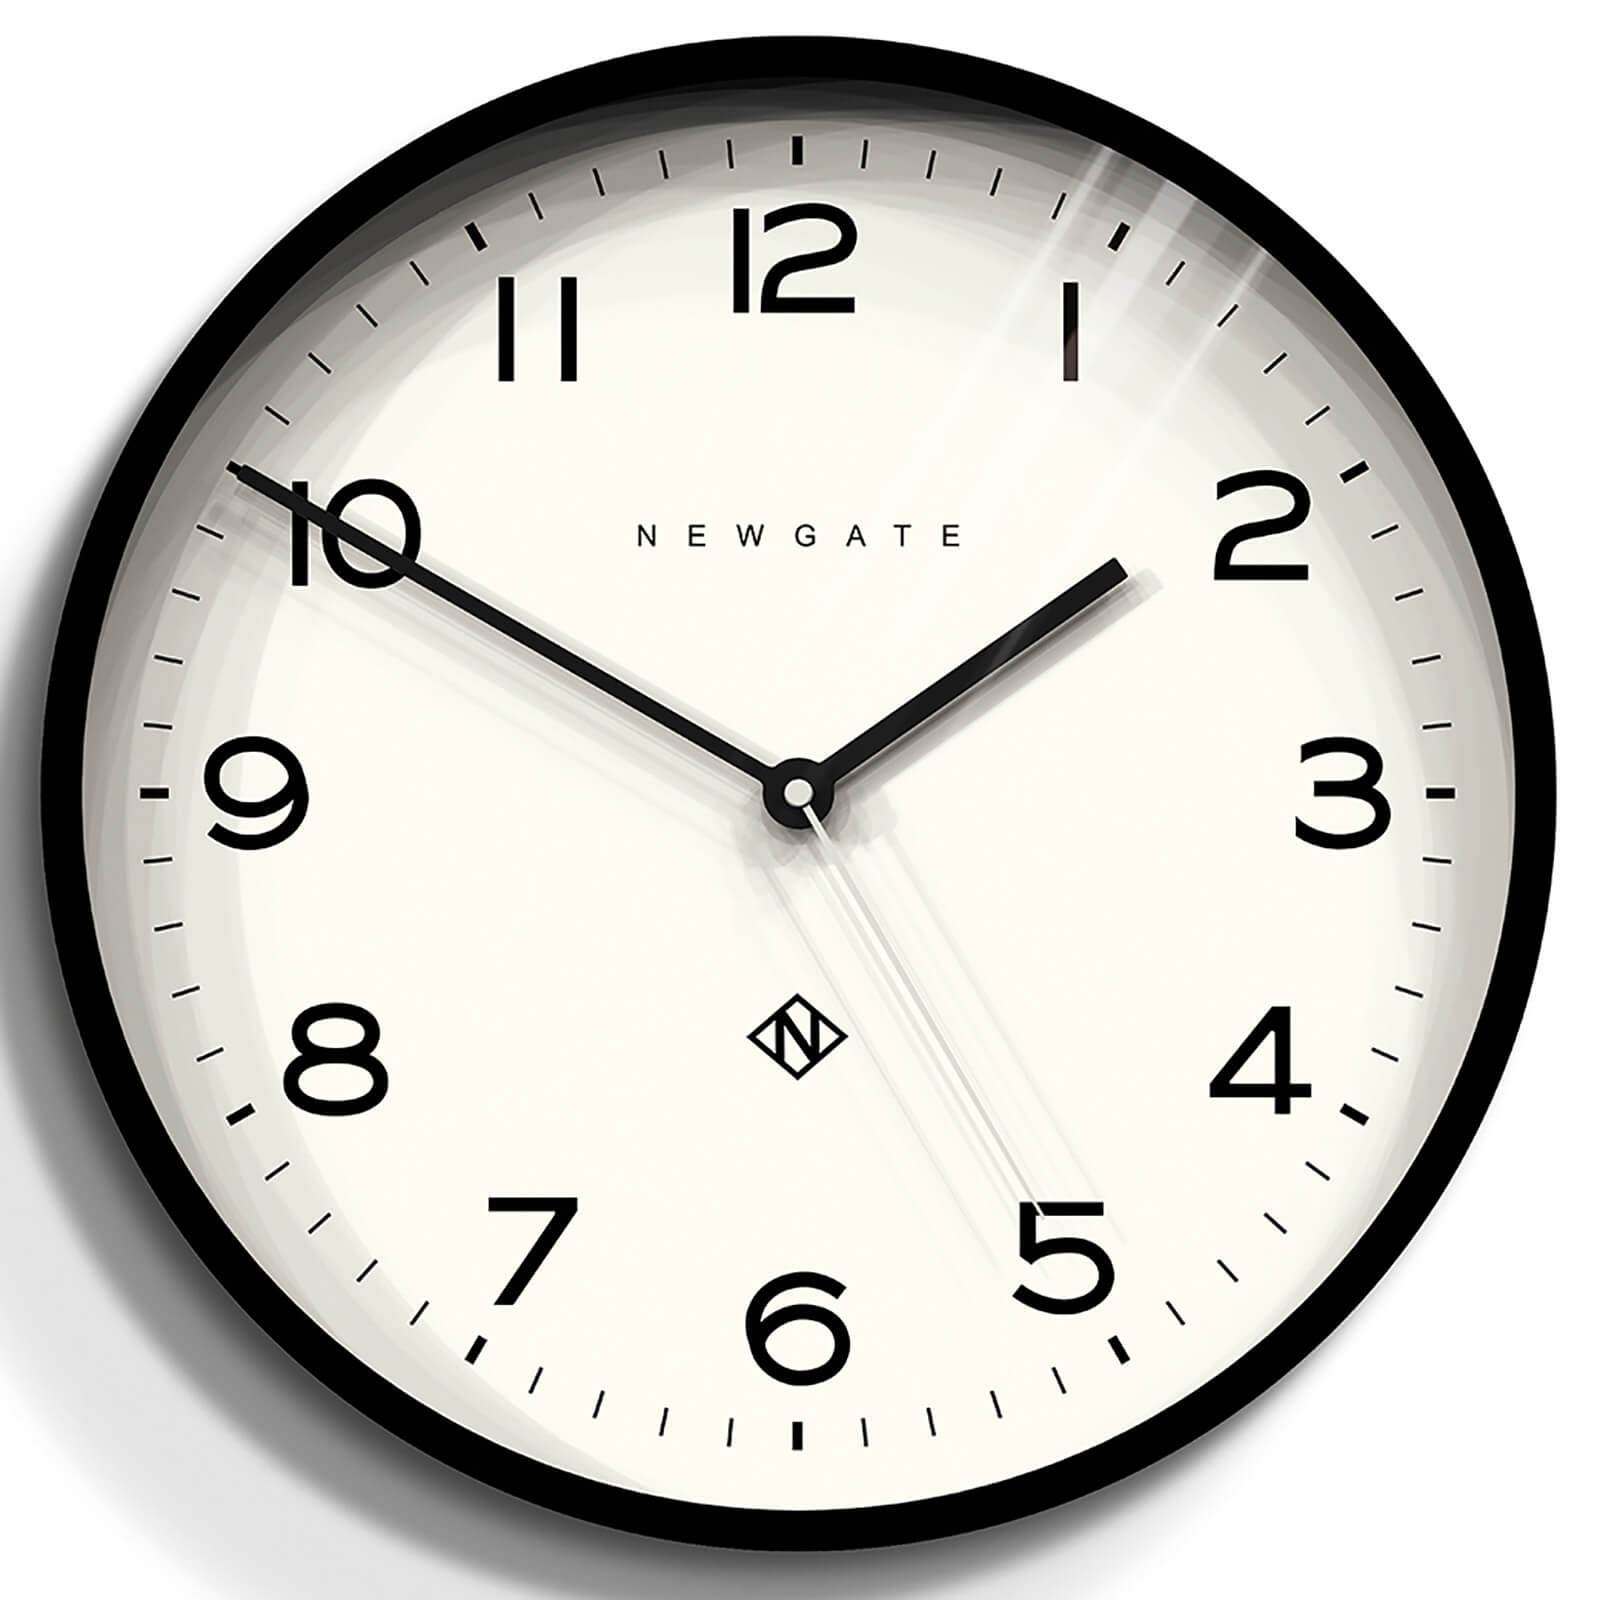 Newgate Clocks - Number Three Echo Wall Clock - Black